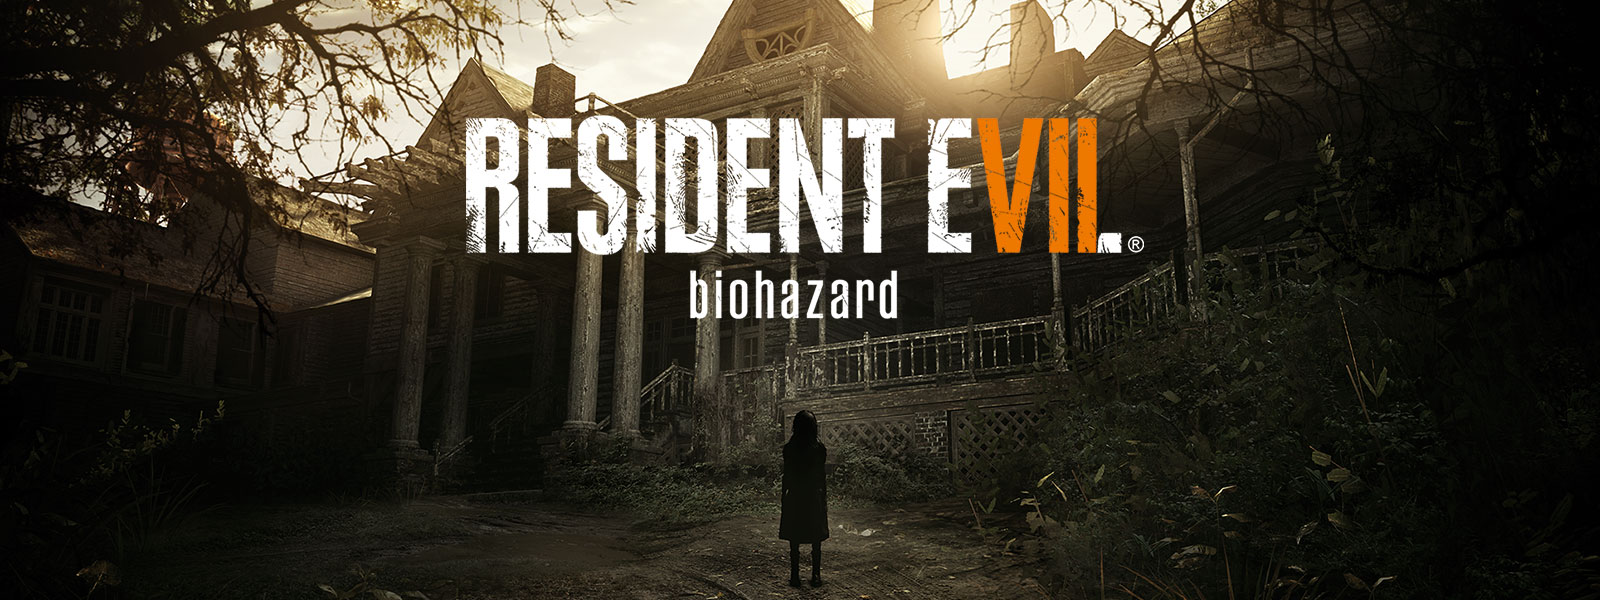 Resident Evil 7 Biohazard Gold Edition dobozának képe egy jelenettel, amelyben egy kísérteties lány áll egy elátkozott ház előtt